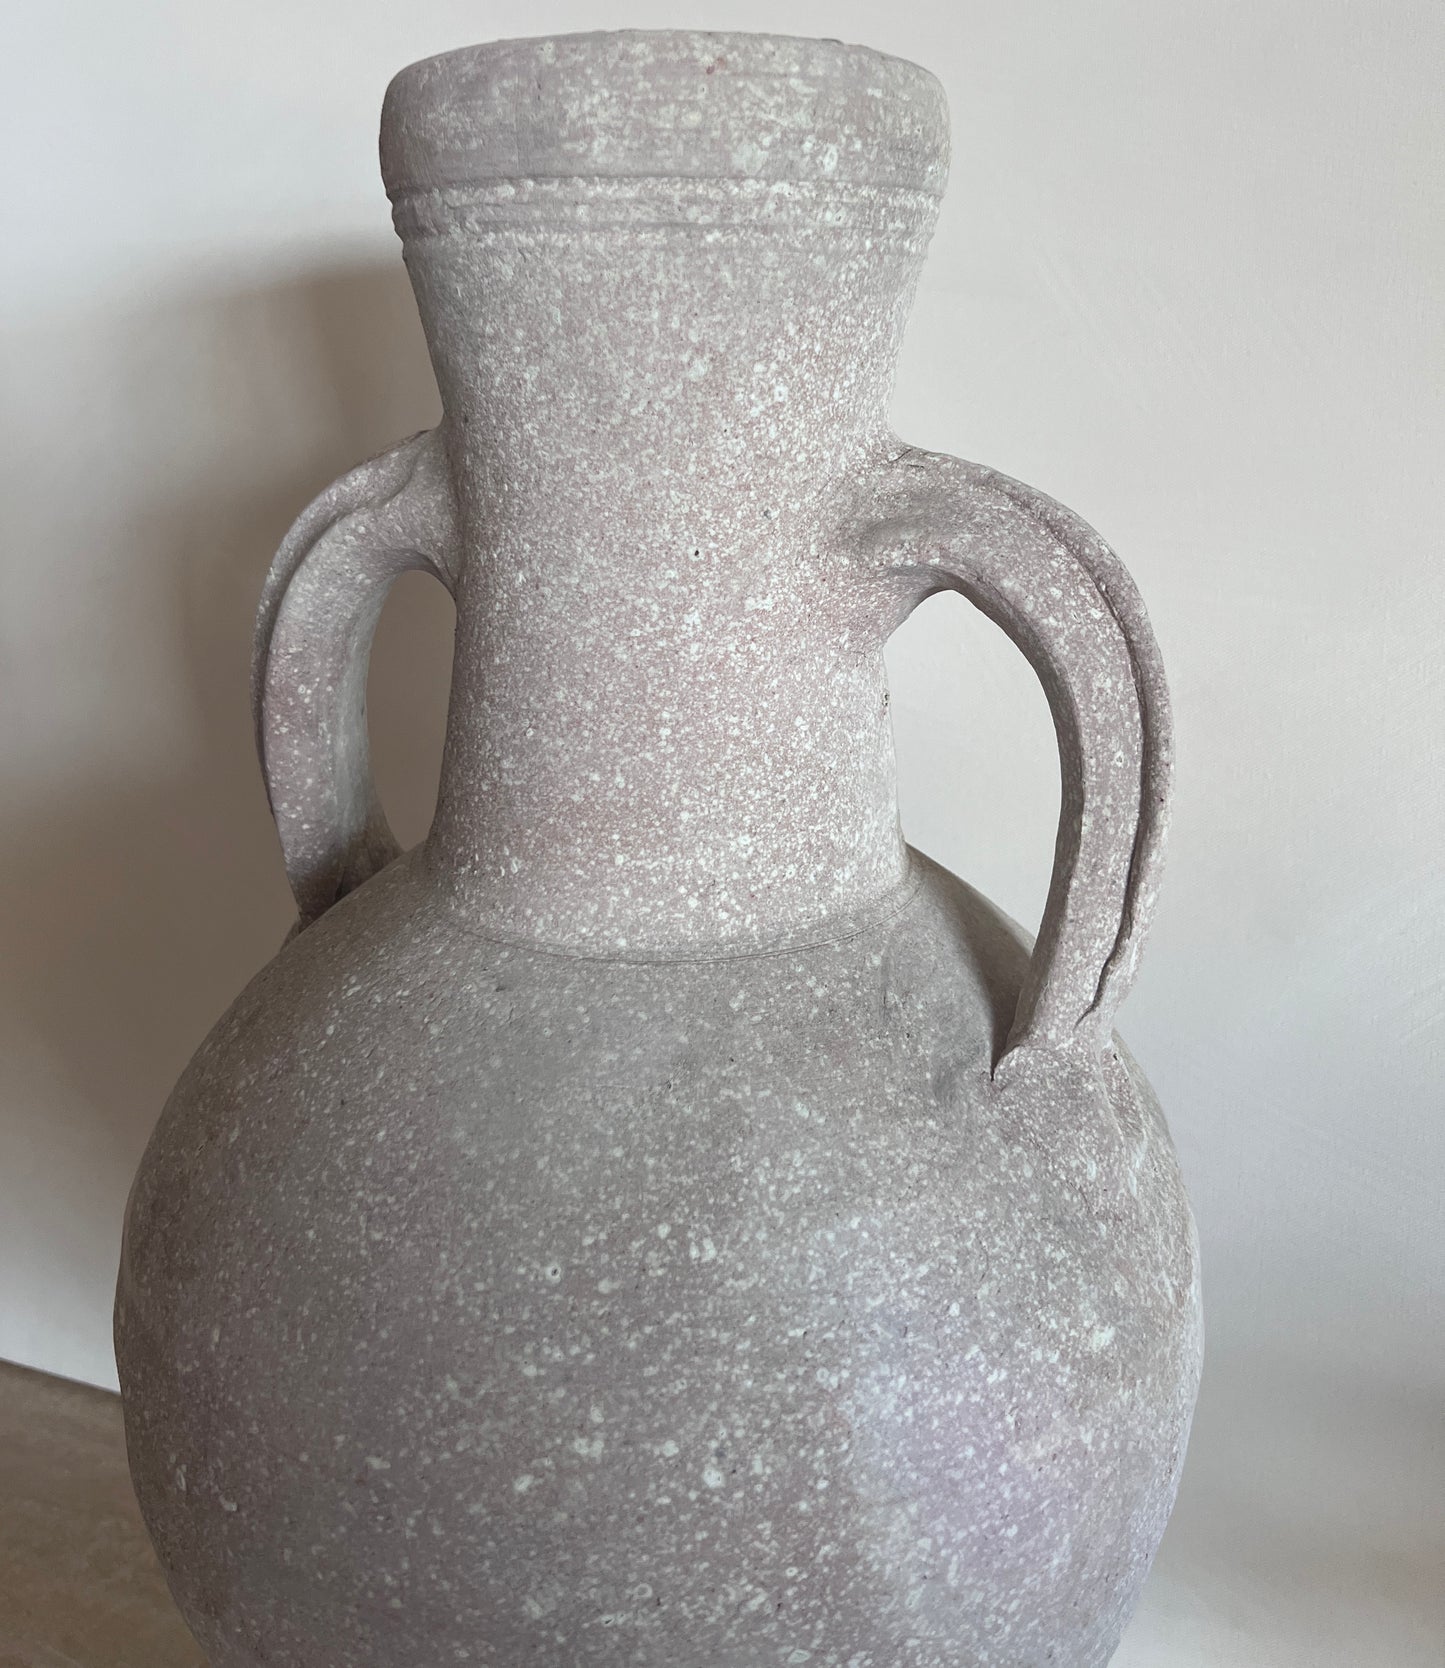 Clay Amphora